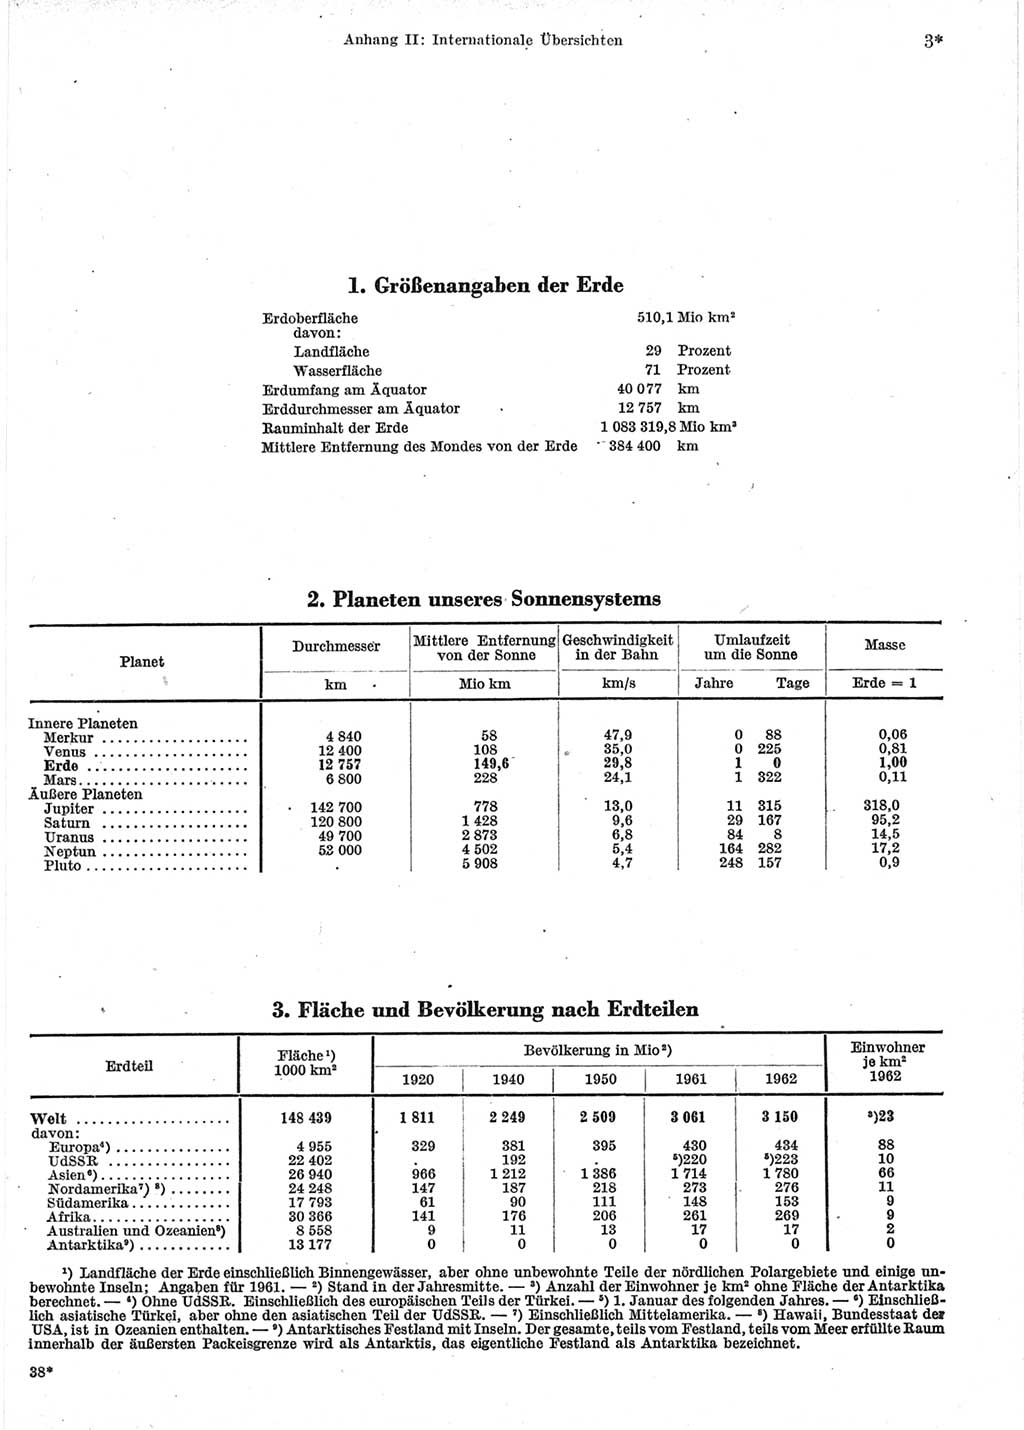 Statistisches Jahrbuch der Deutschen Demokratischen Republik (DDR) 1964, Seite 3 (Stat. Jb. DDR 1964, S. 3)